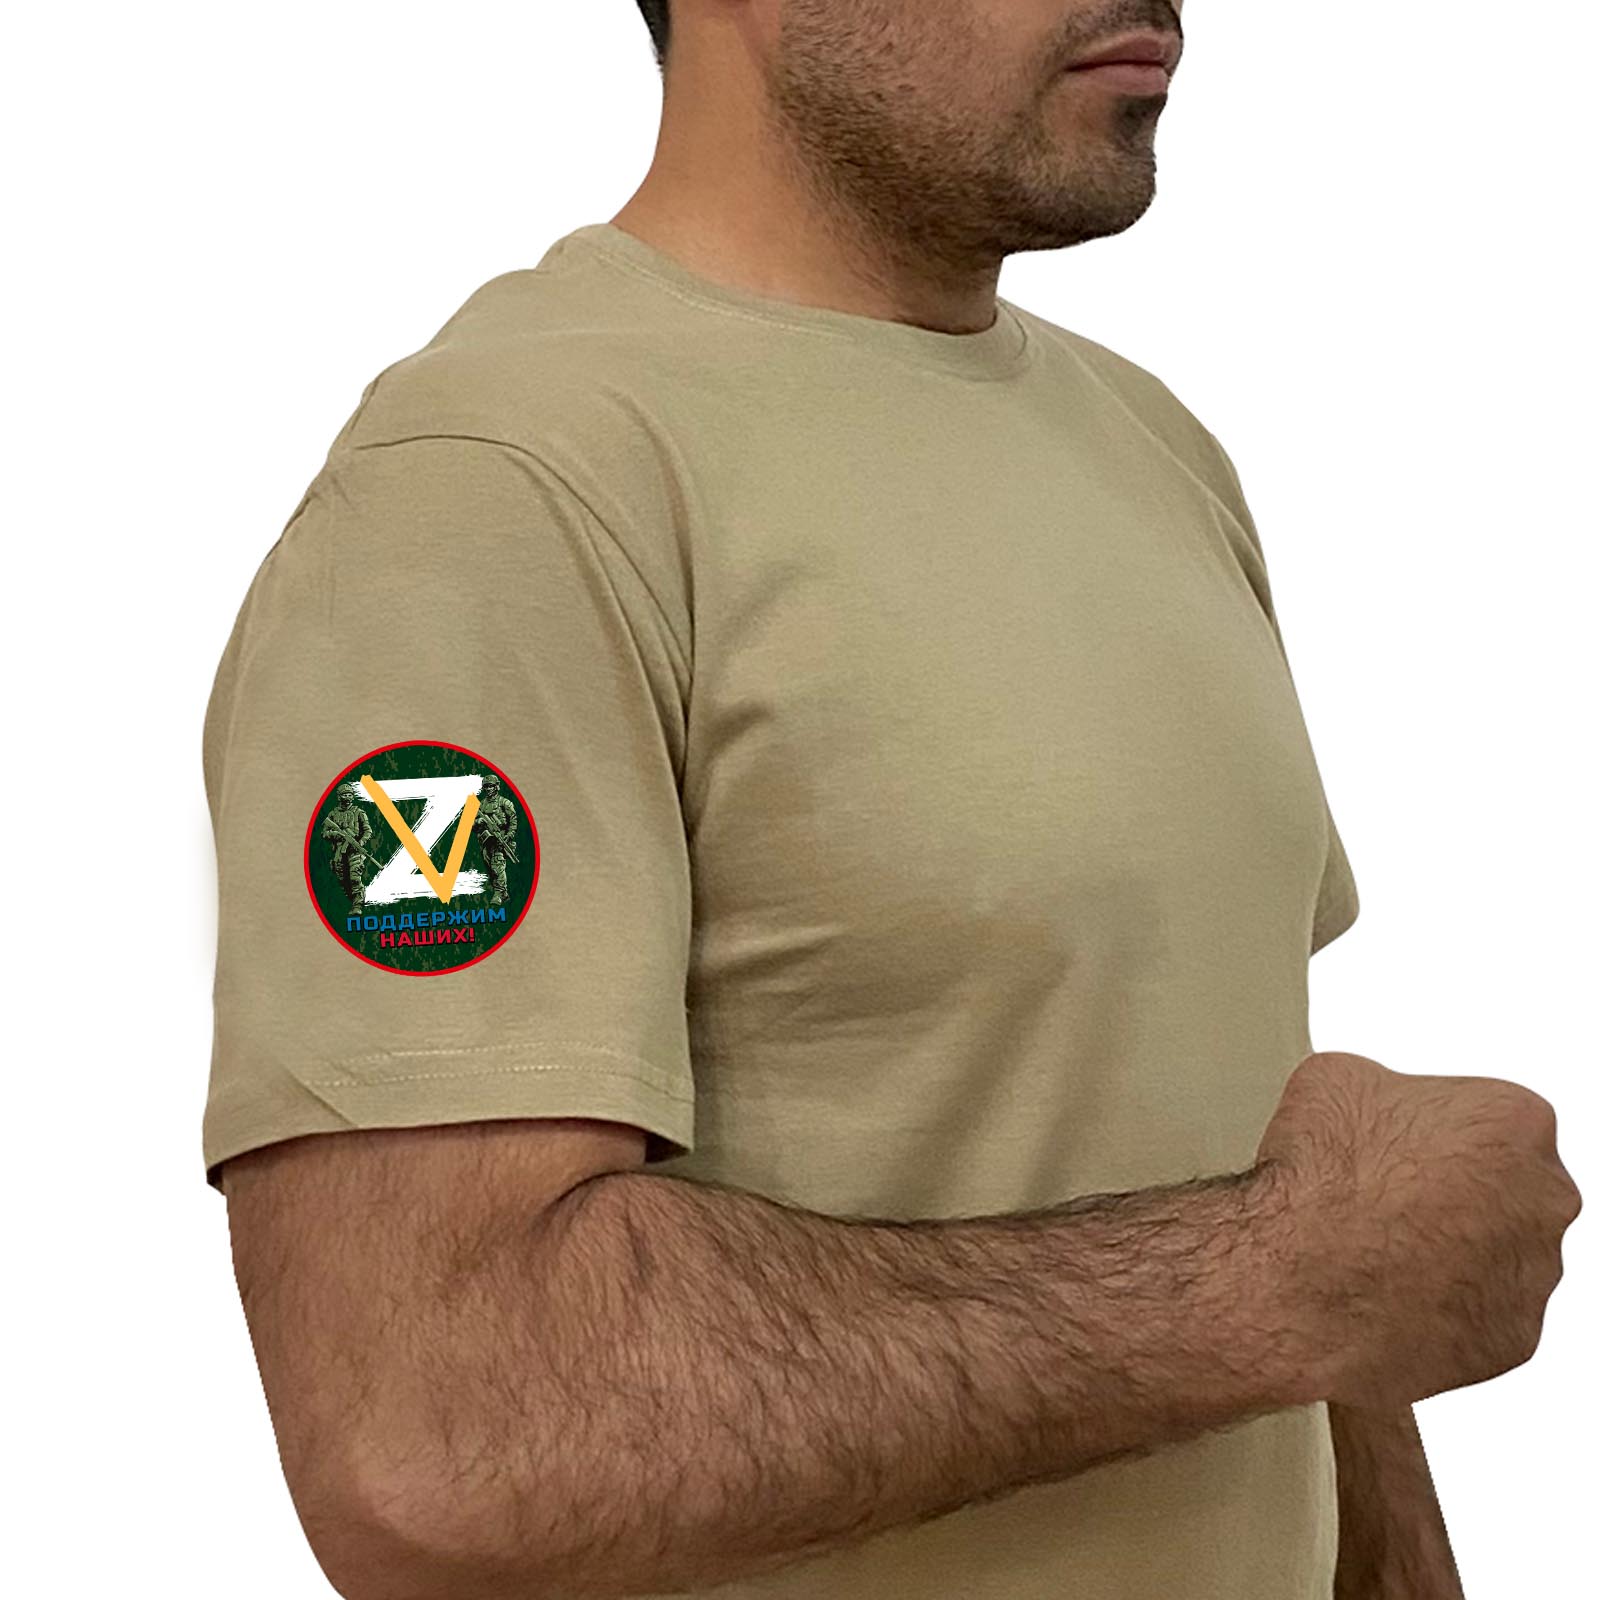 Купить мужскую практичную футболку Z V онлайн выгодно